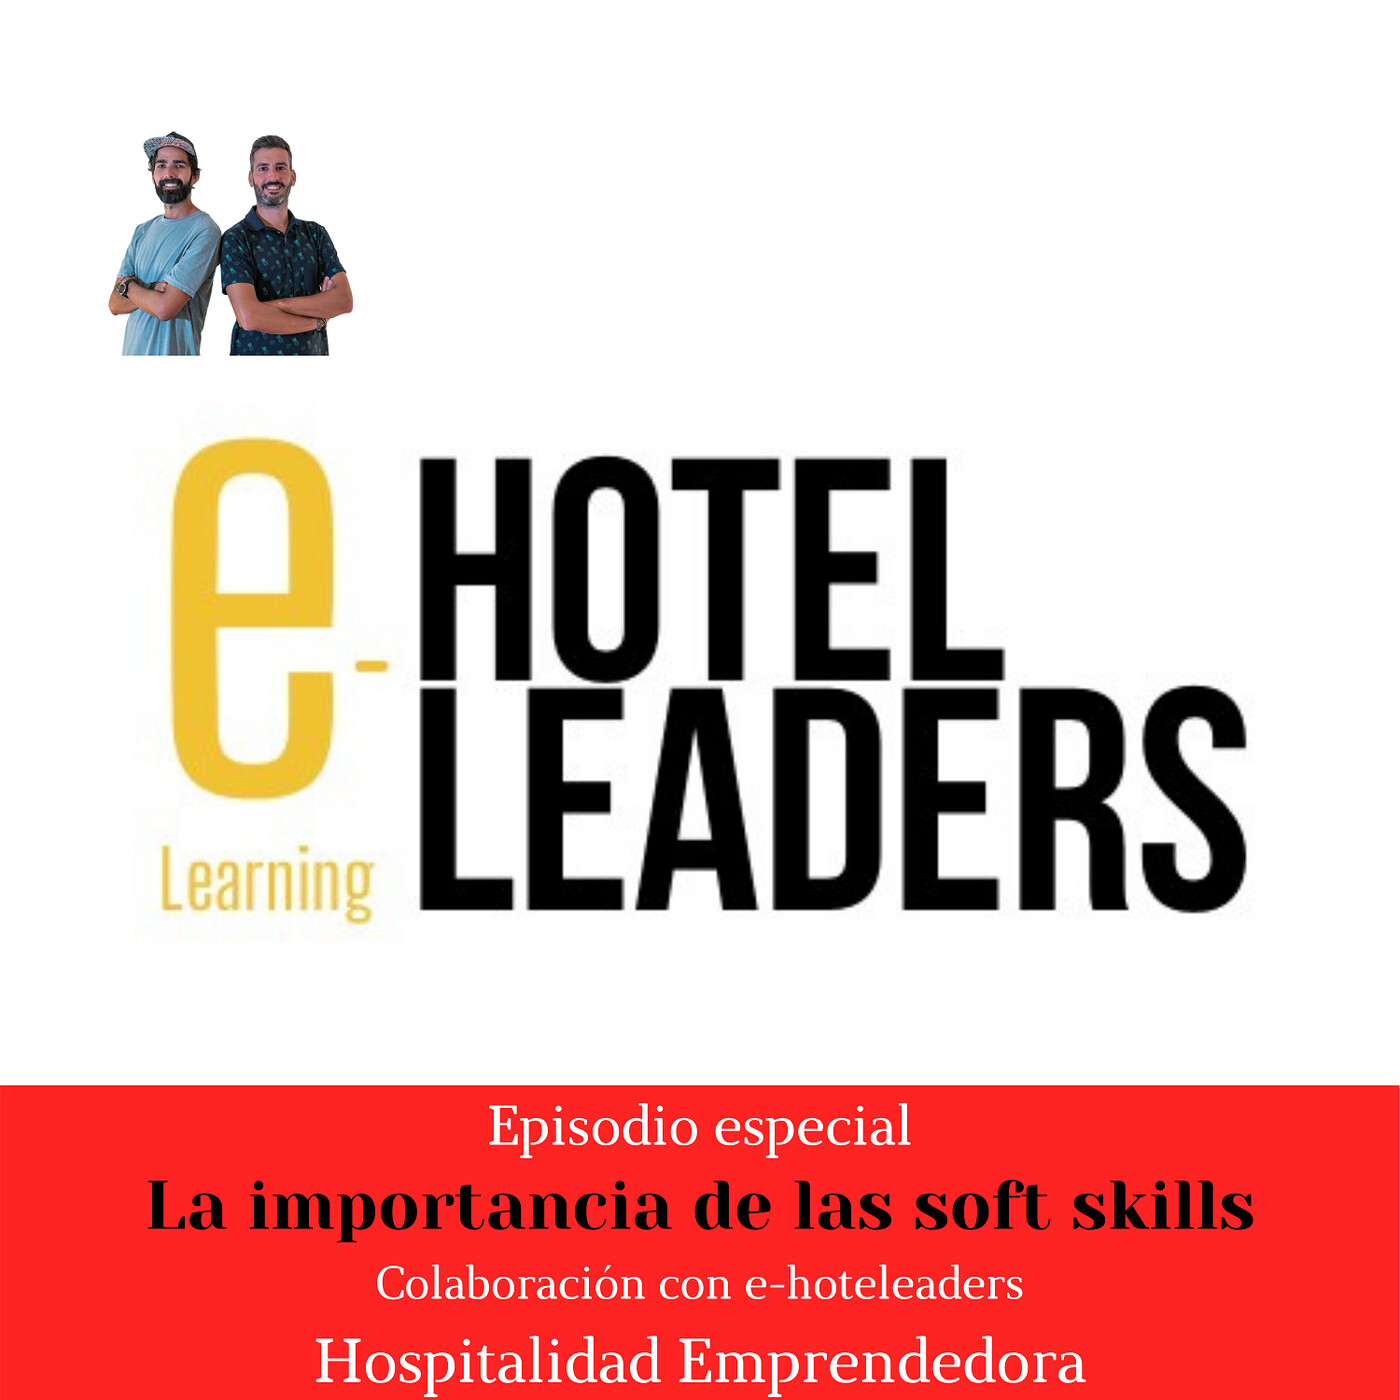 Hospitalidad Emprendedora con E-hoteleaders. La importancia de las soft skills